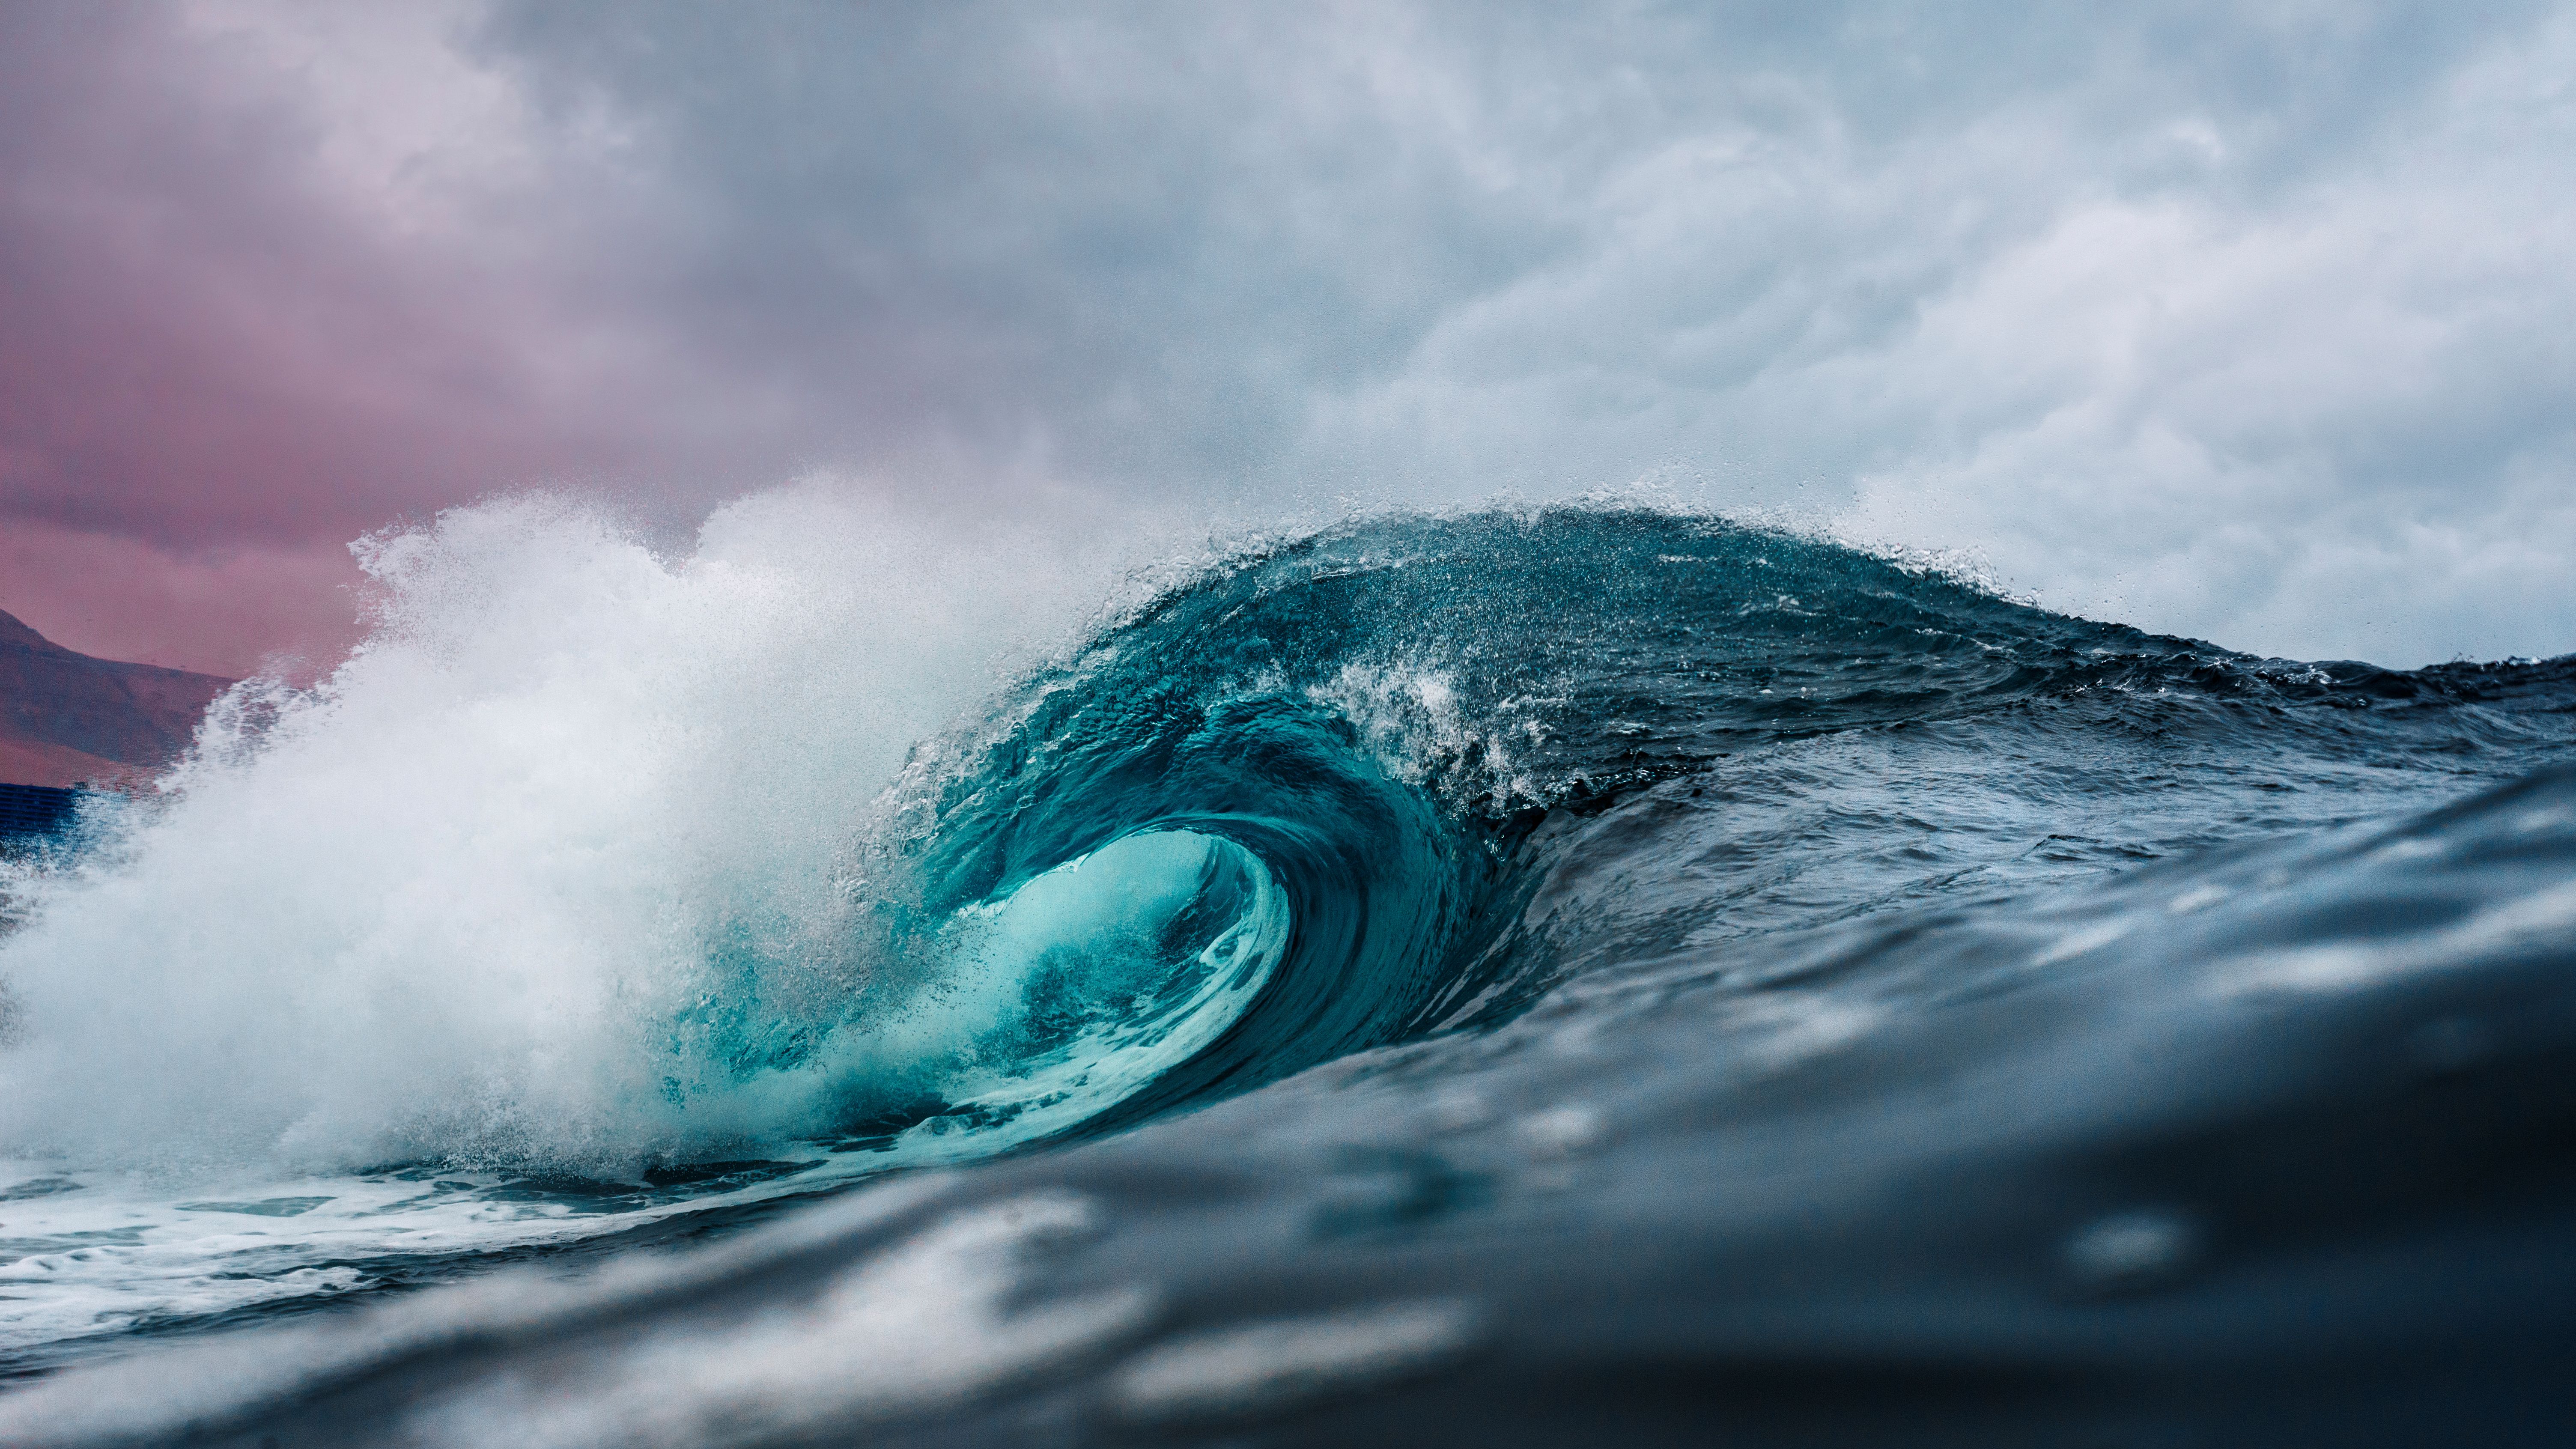 Ocean Water Wave Photo · Free